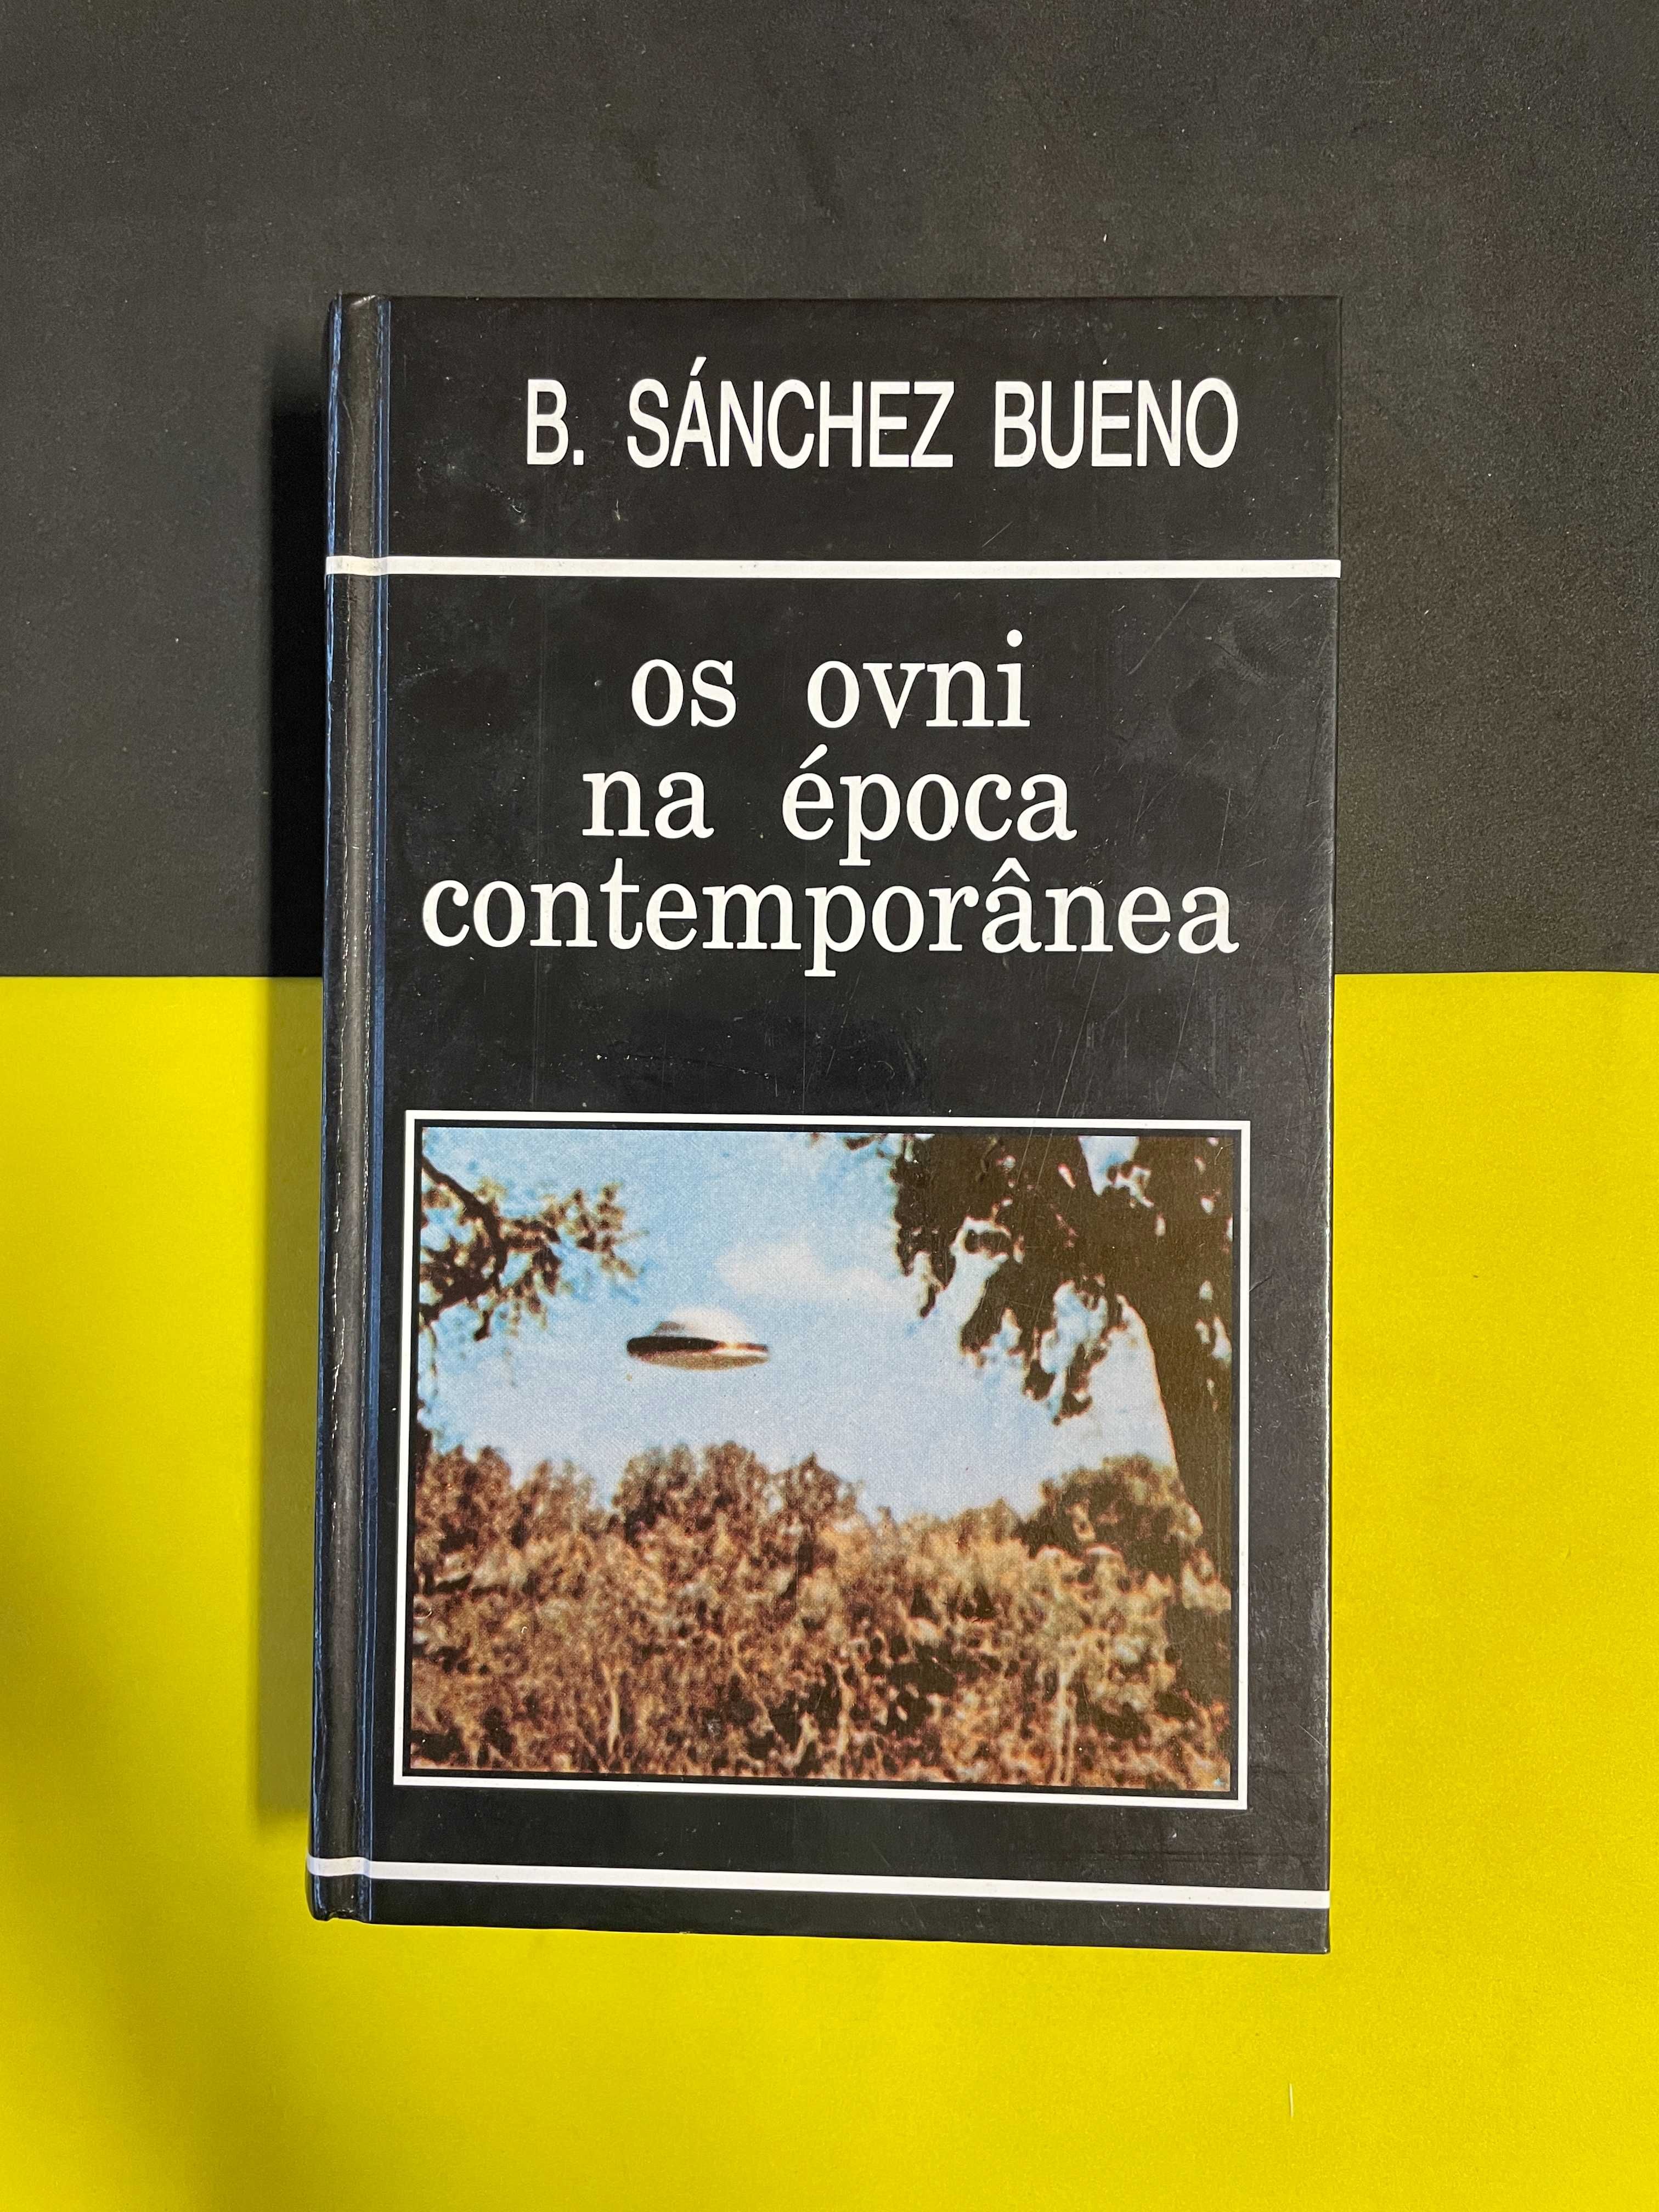 B. Sánchez Bueno - Os ovni na época contemporânea